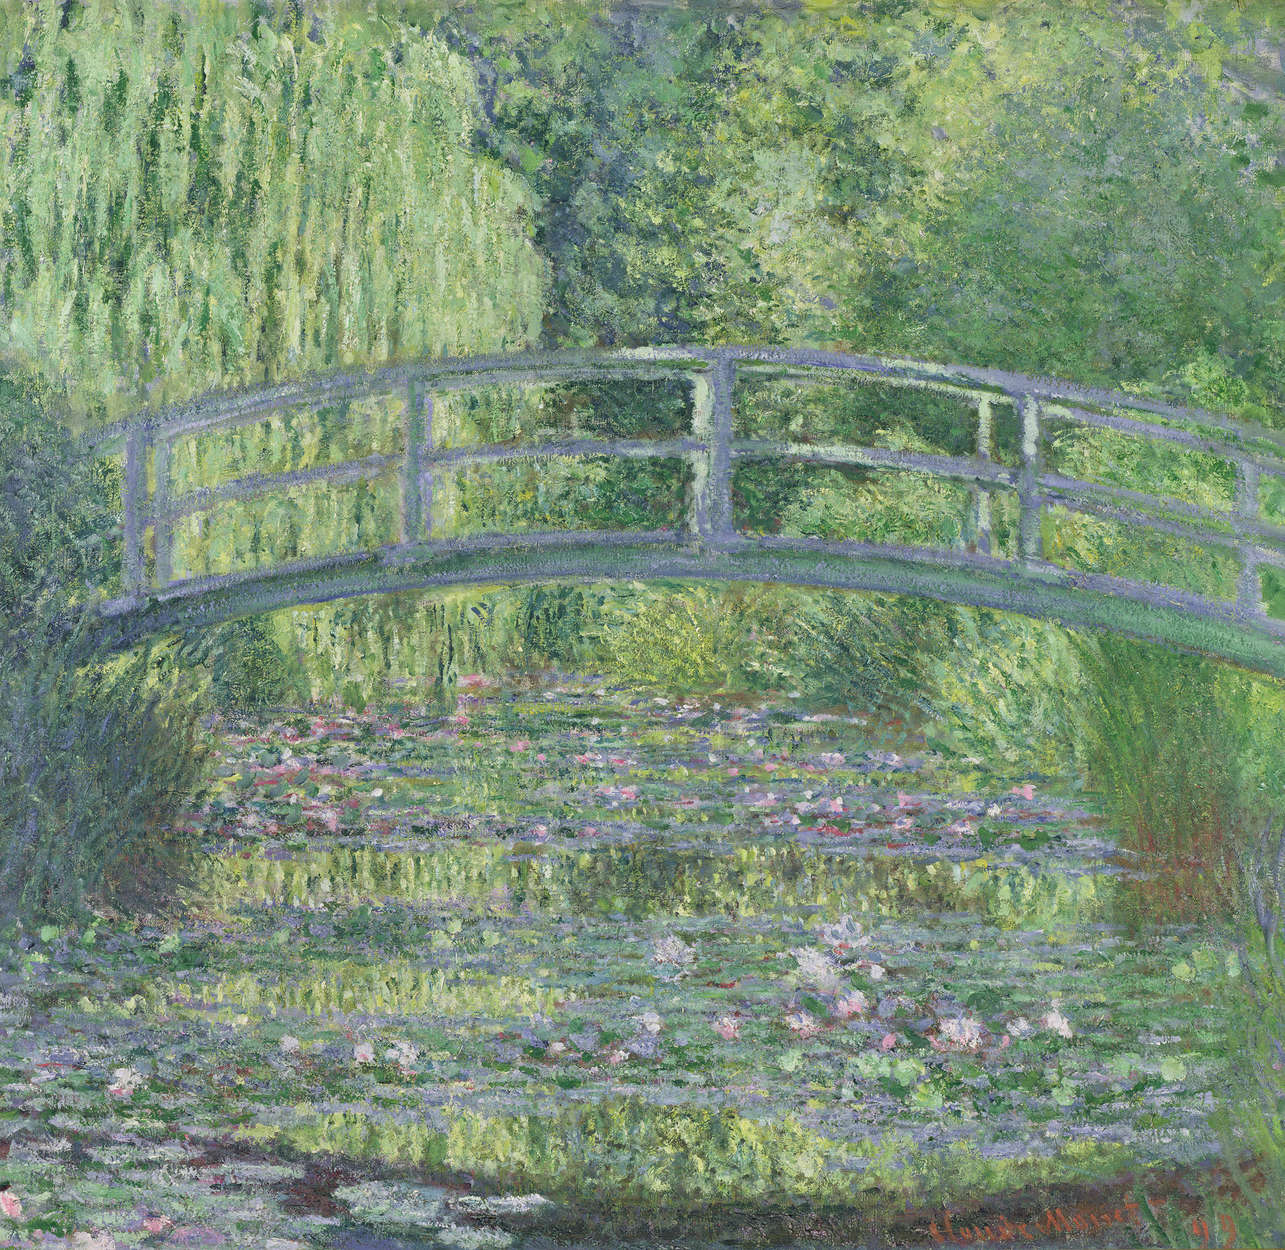             Estanque de nenúfares: Armonía verde", mural de Claude Monet
        